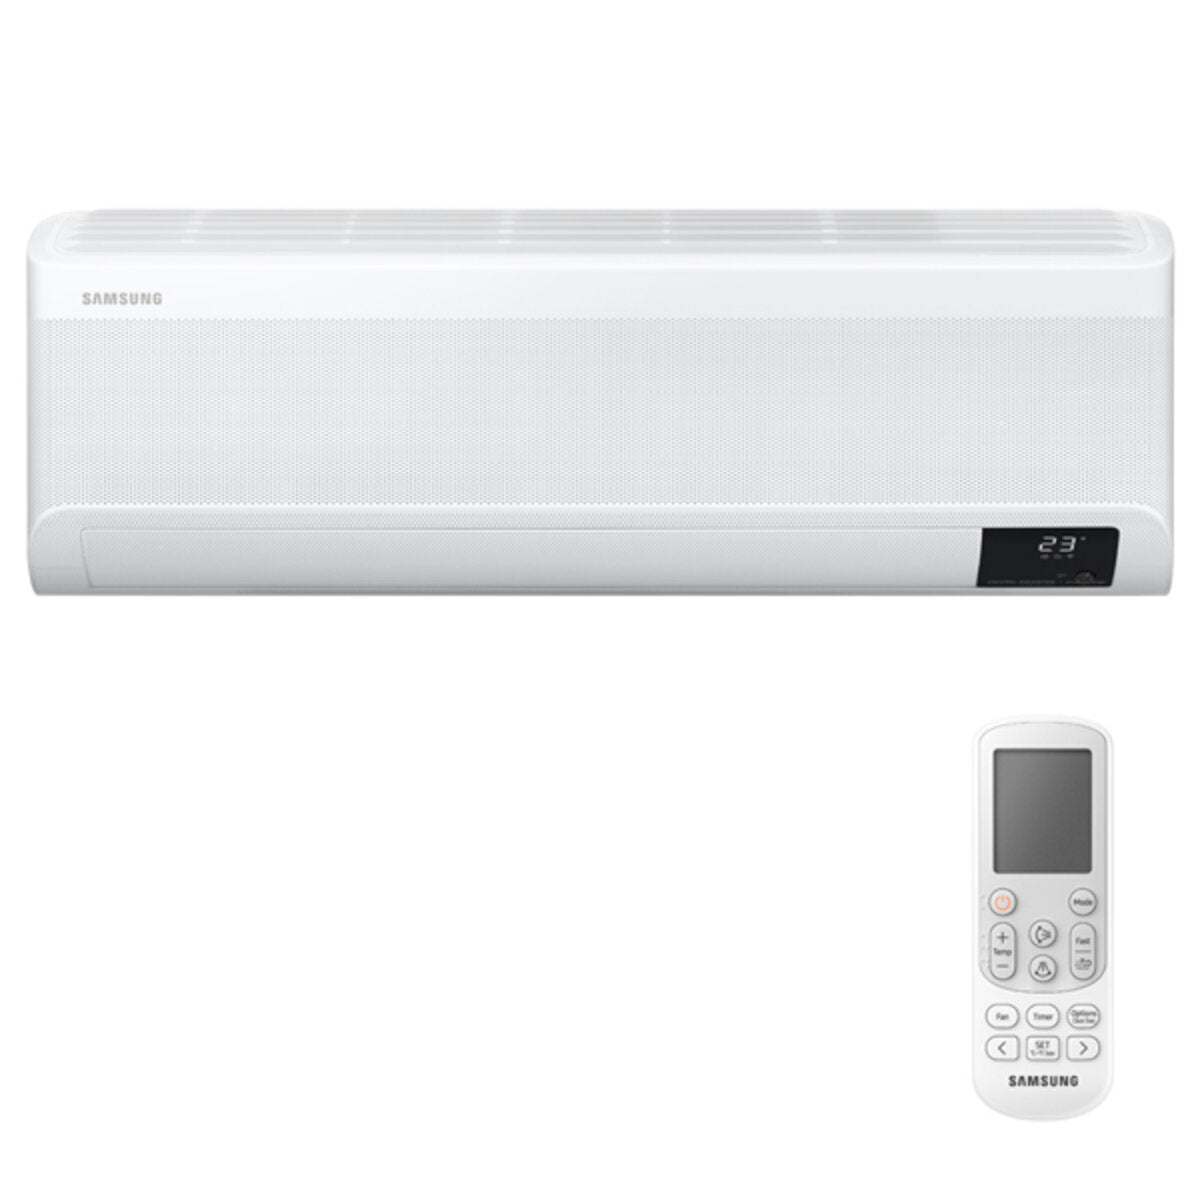 Samsung windfree Klimaanlage Avant Penta Split 7000 + 7000 + 7000 + 9000 + 12000 BTU Inverter A++ WLAN Außengerät 10,0 kW